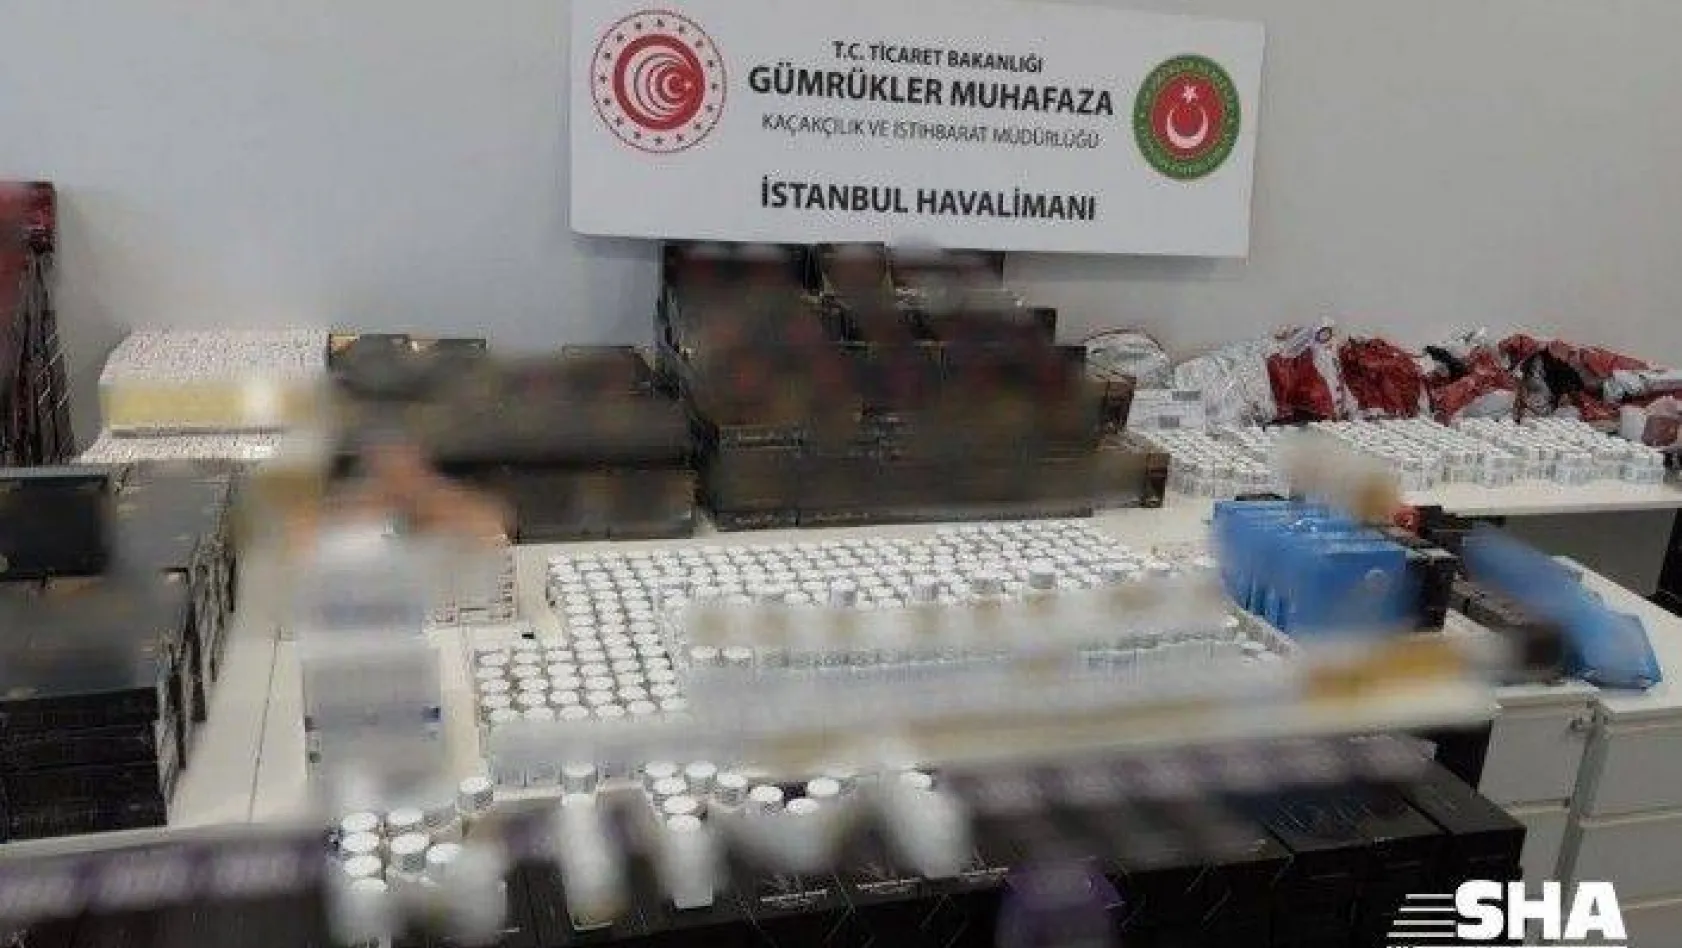 İstanbul Havalima'nın cinsel içerikli ürün ele geçirildi